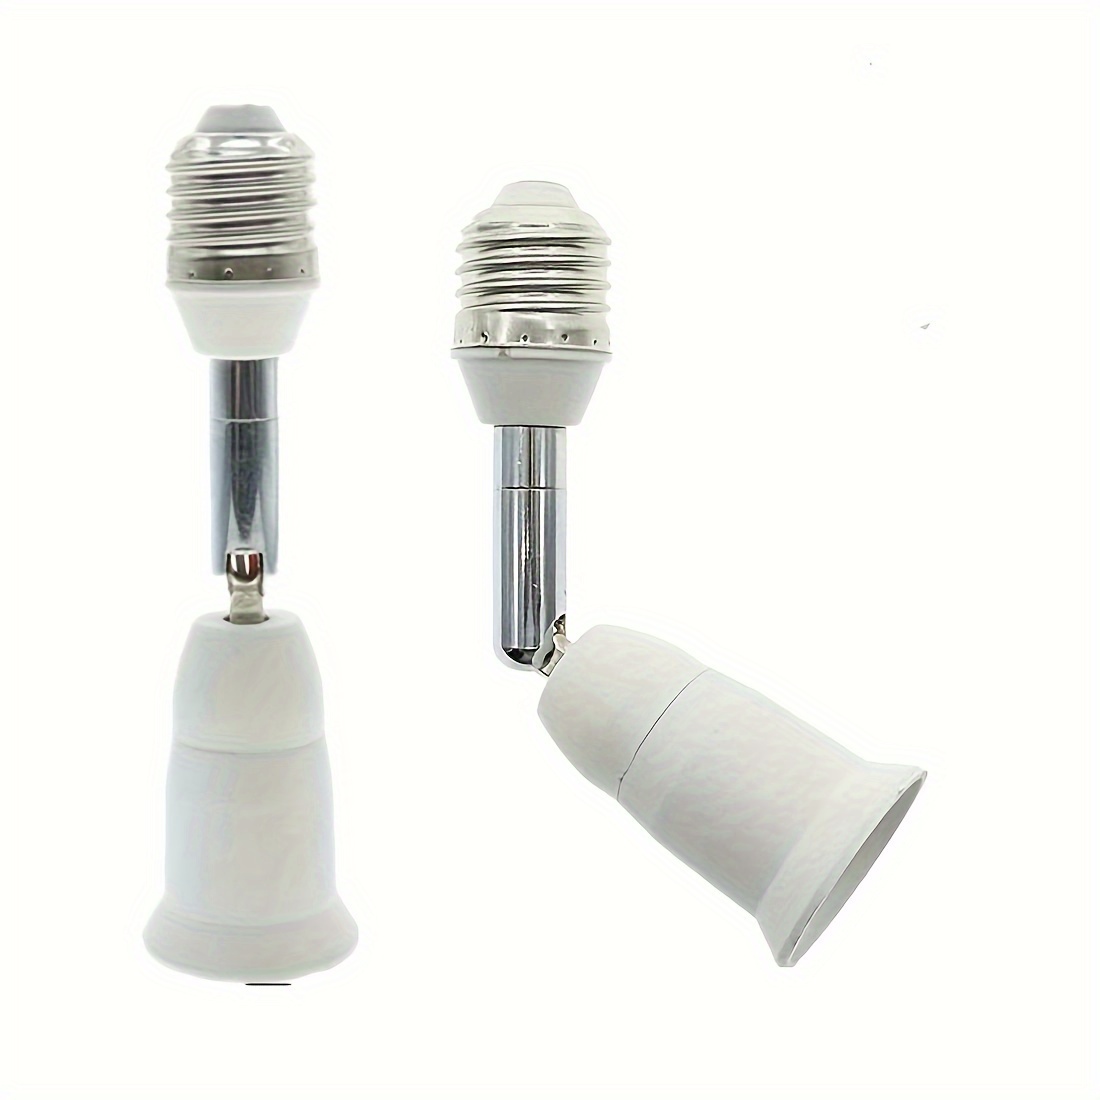 Douille de Plafonnier E27 à vis pour Lampe Murale Mur Intérieur, AC 230V,  Support pour Ampoule